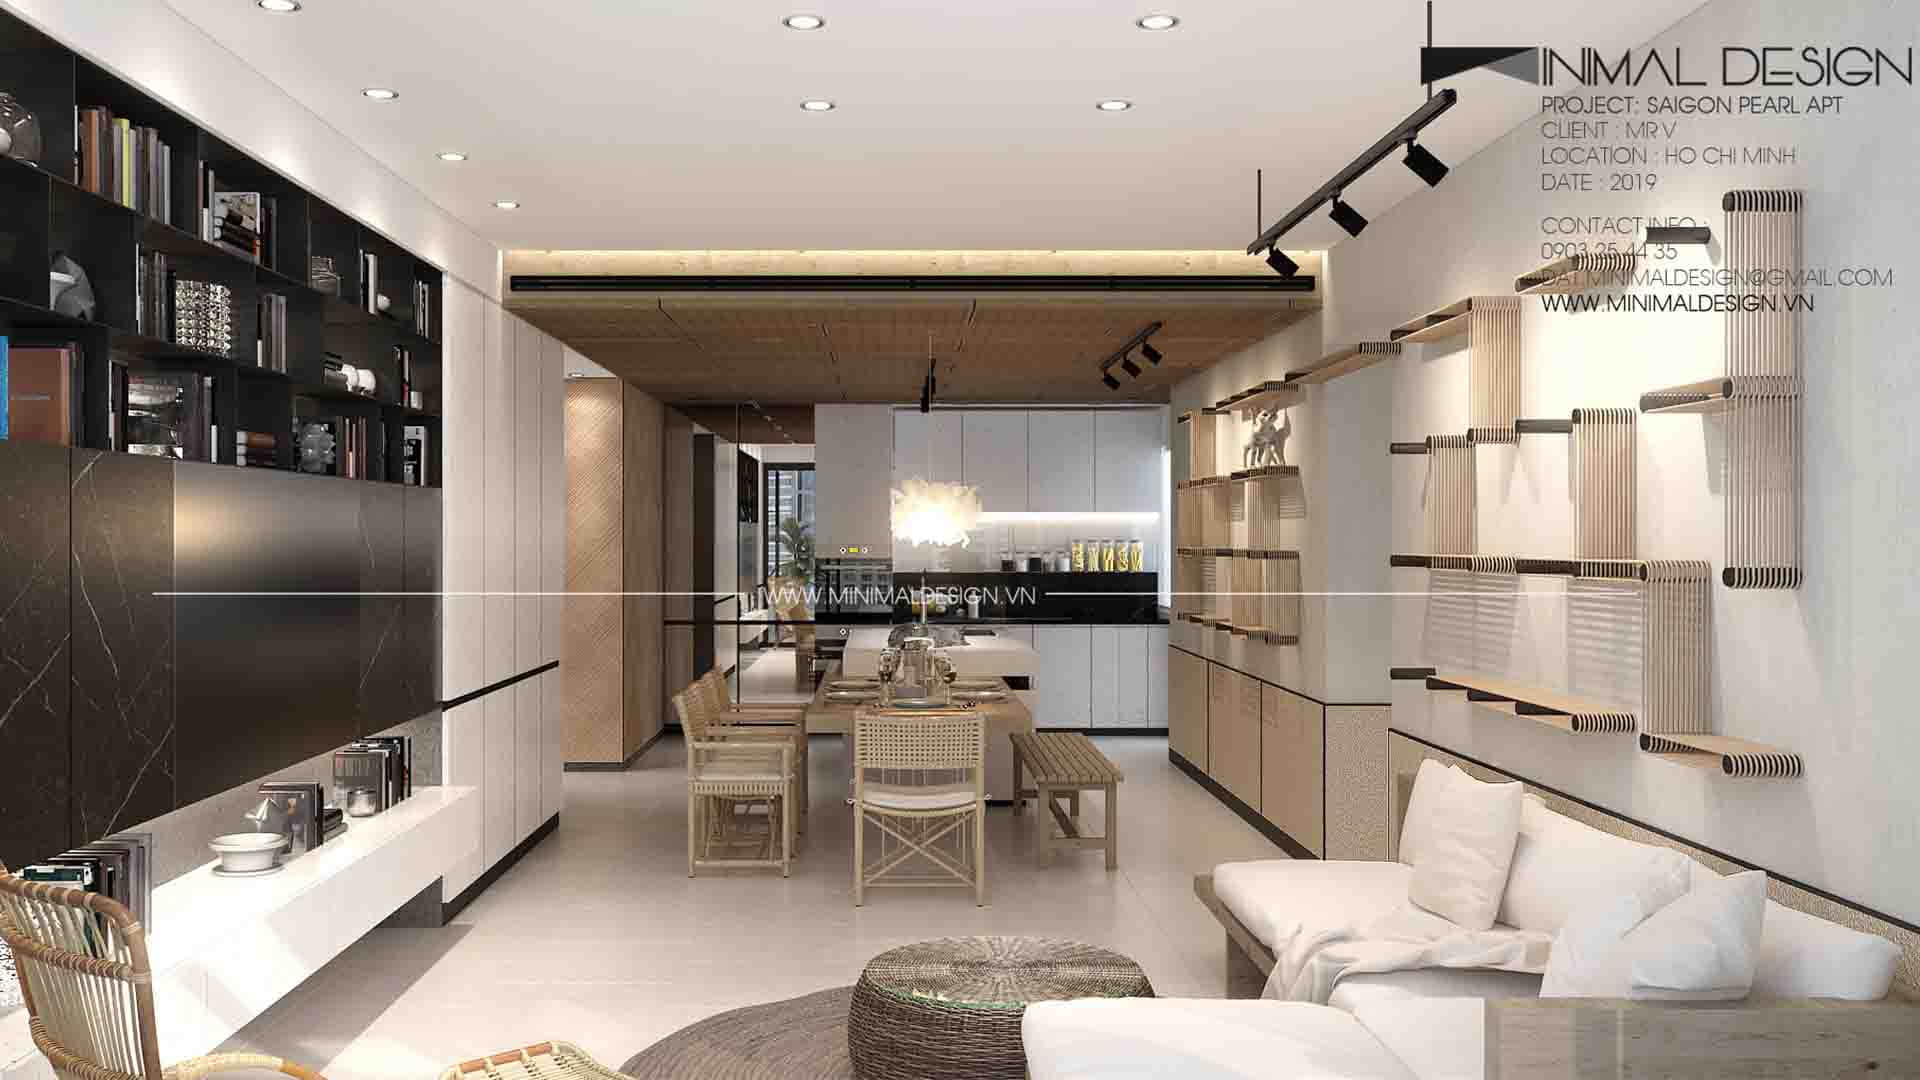 Thiết kế căn hộ Saigon Pearl sẽ là một giải pháp mới trong việc tạo không gian sống tuyệt vời cho những người yêu thích thú cưng.